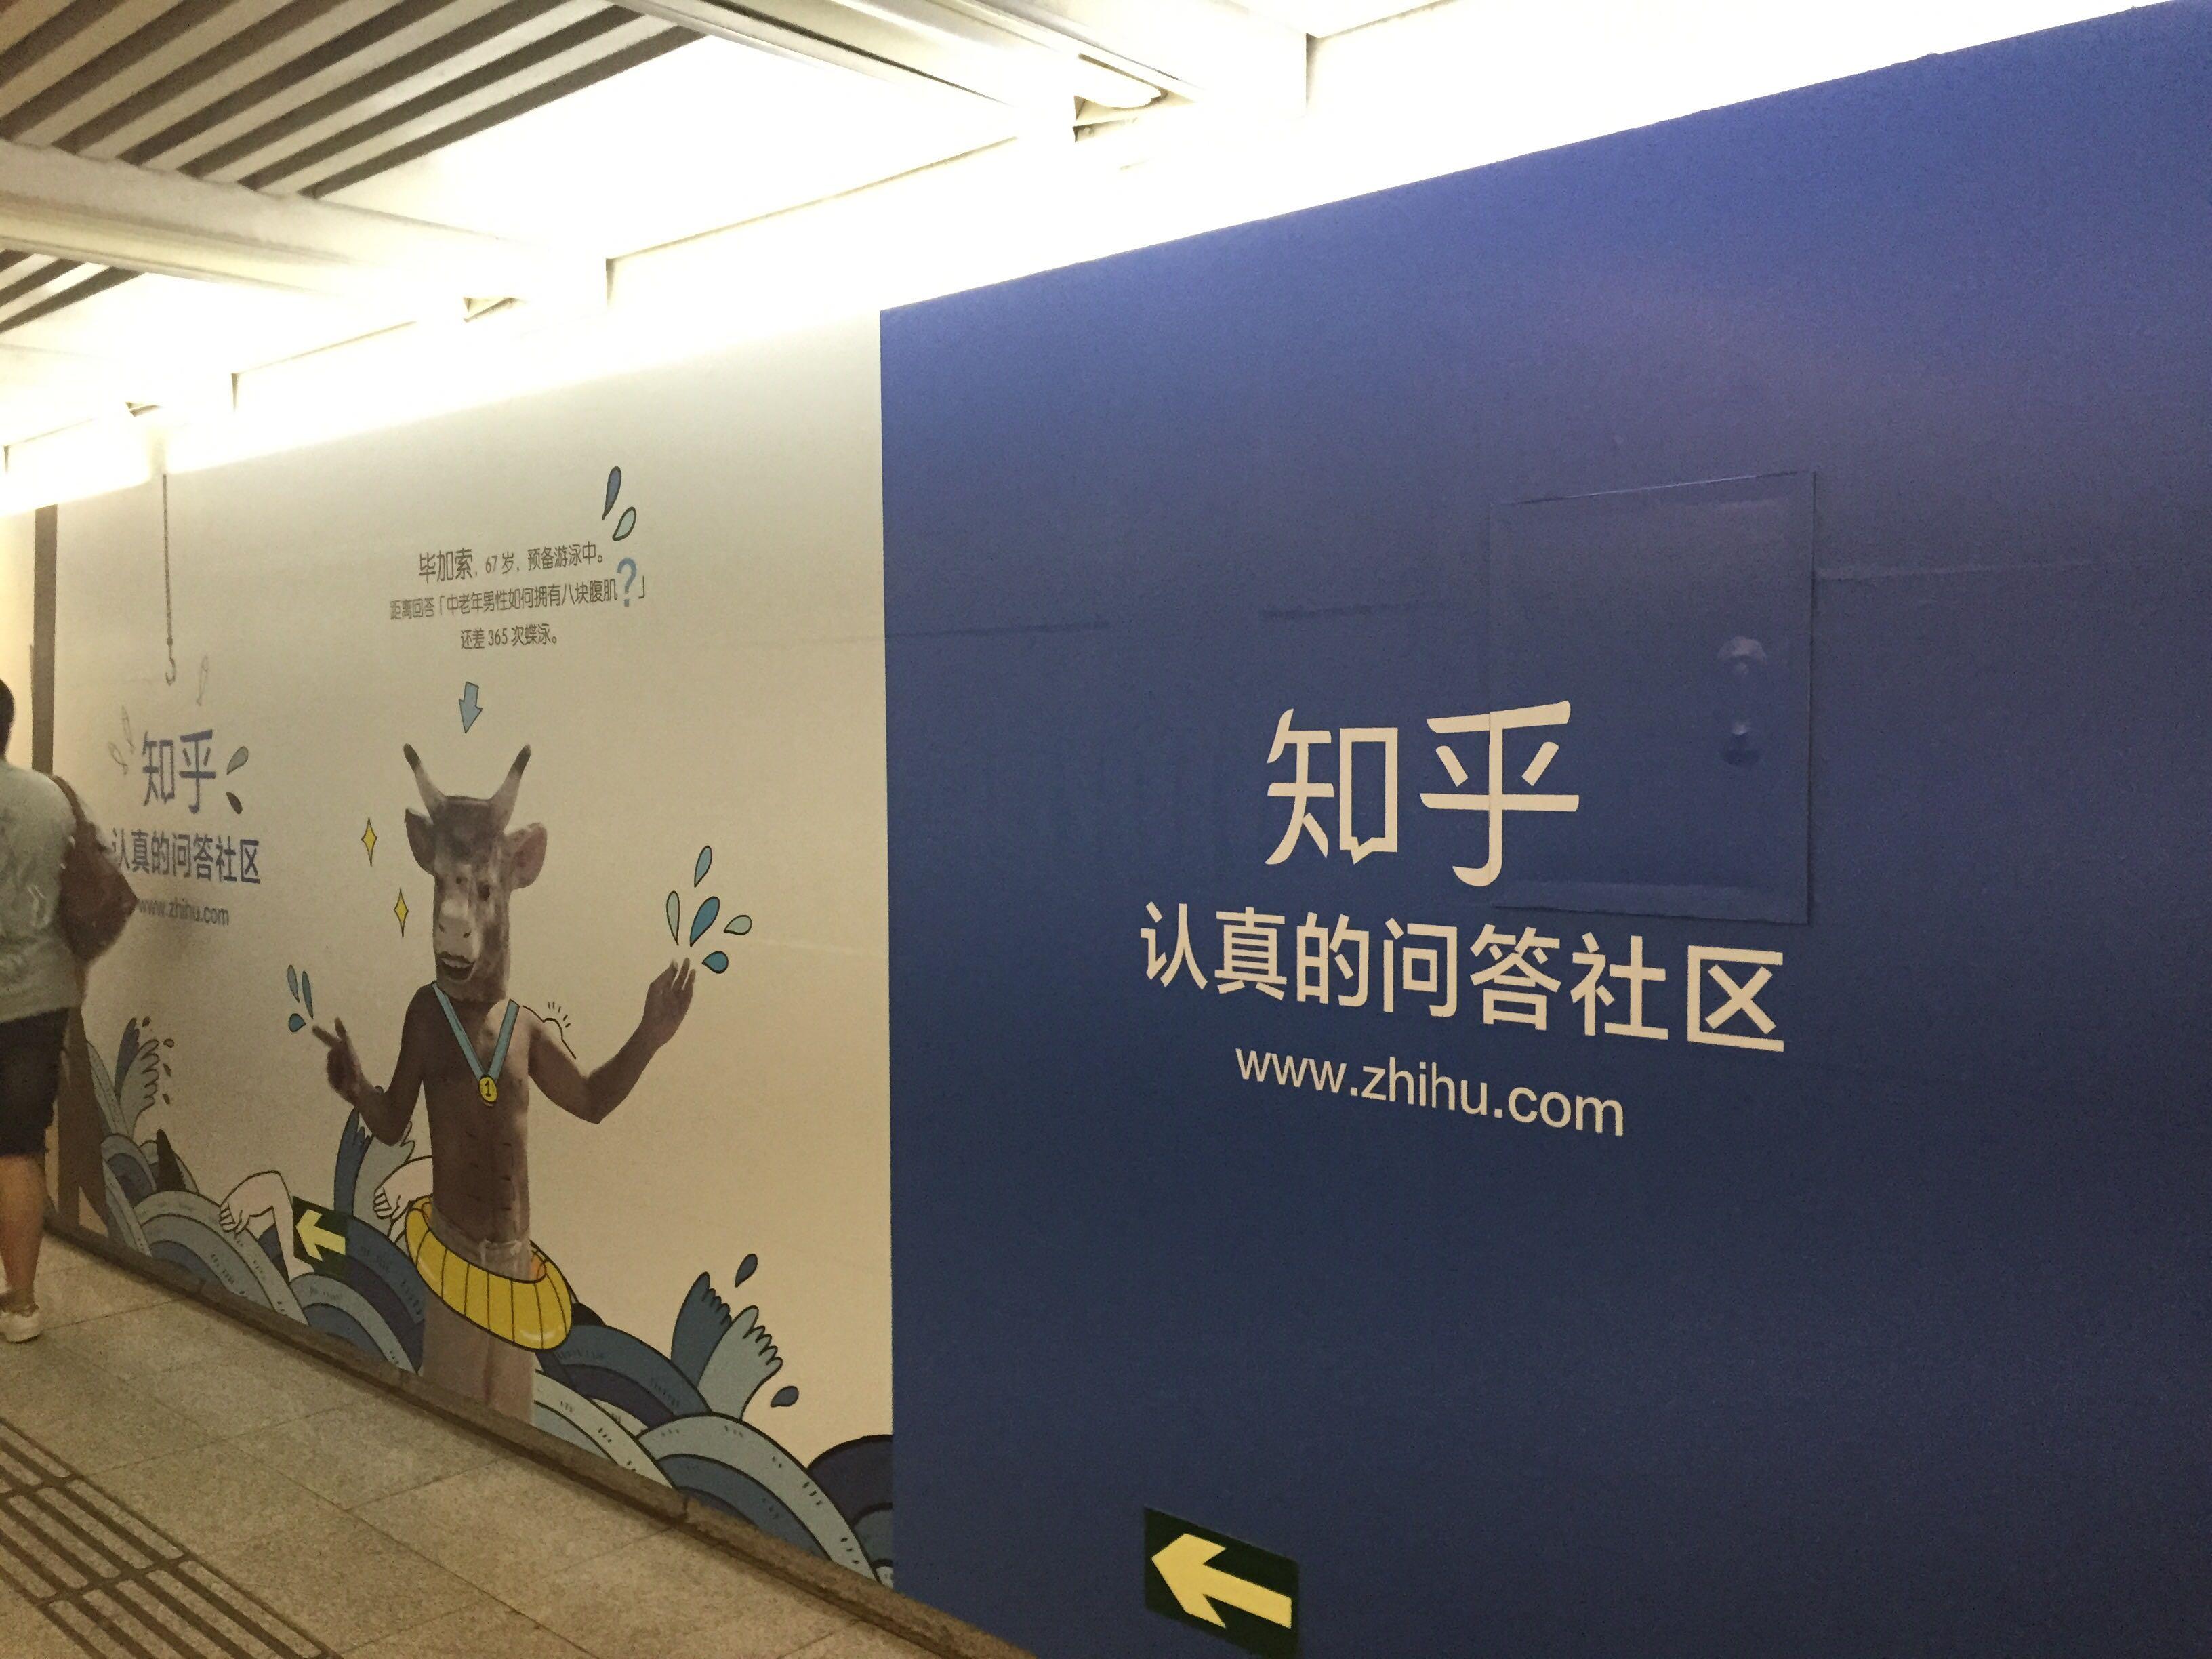 知乎在北京地铁通道投放广告牌的商业逻辑是什